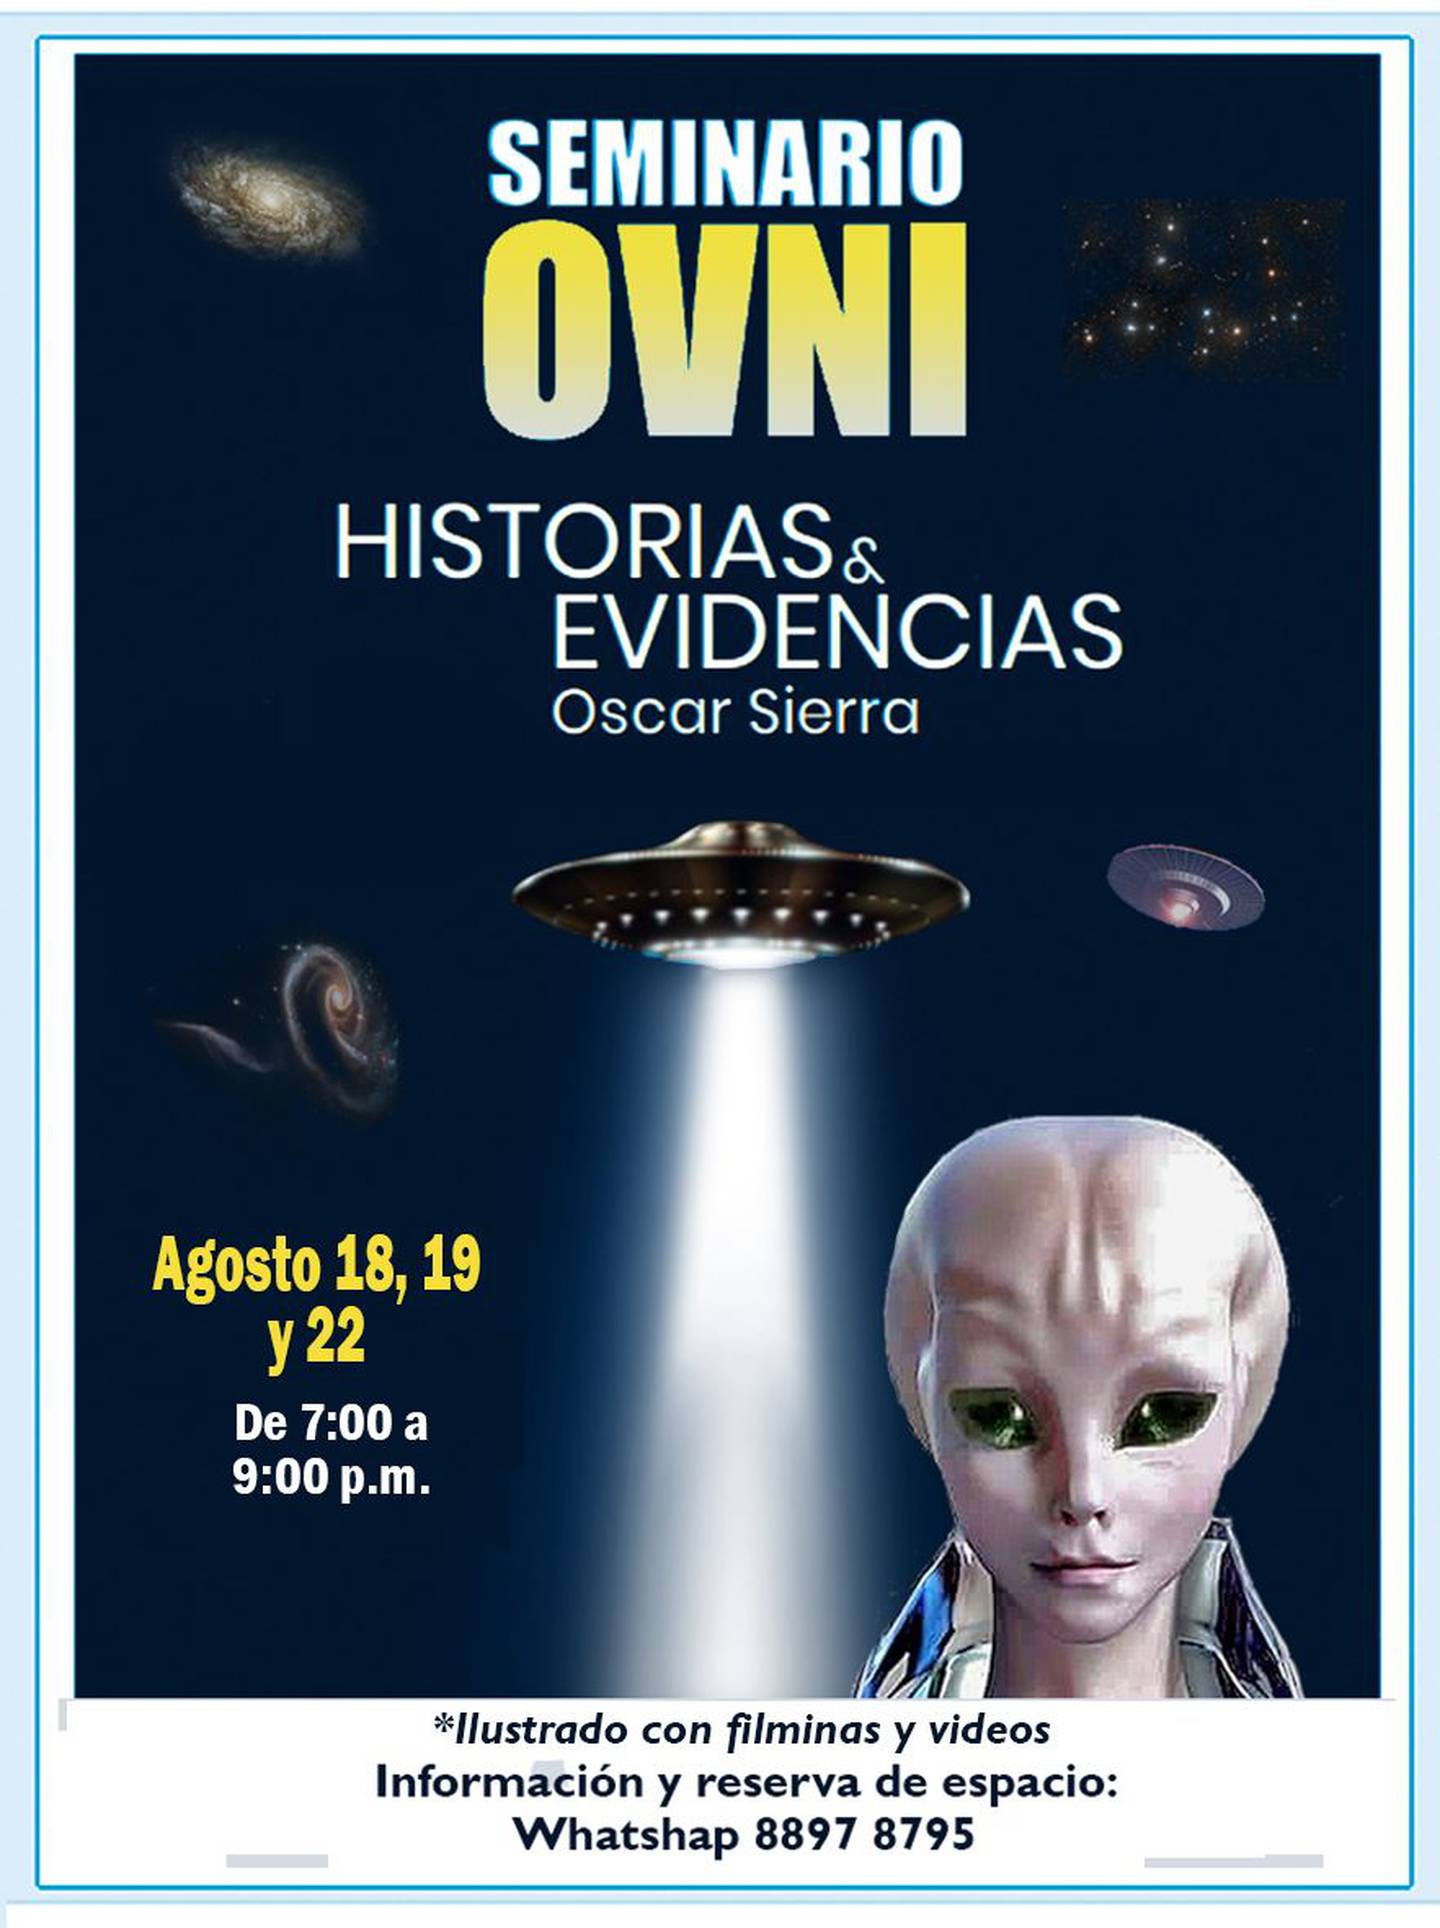 Óscar Sierra realizará un seminario llamado “Historias y evidencias” en el cual los días 18, 19 y 22 de agosto